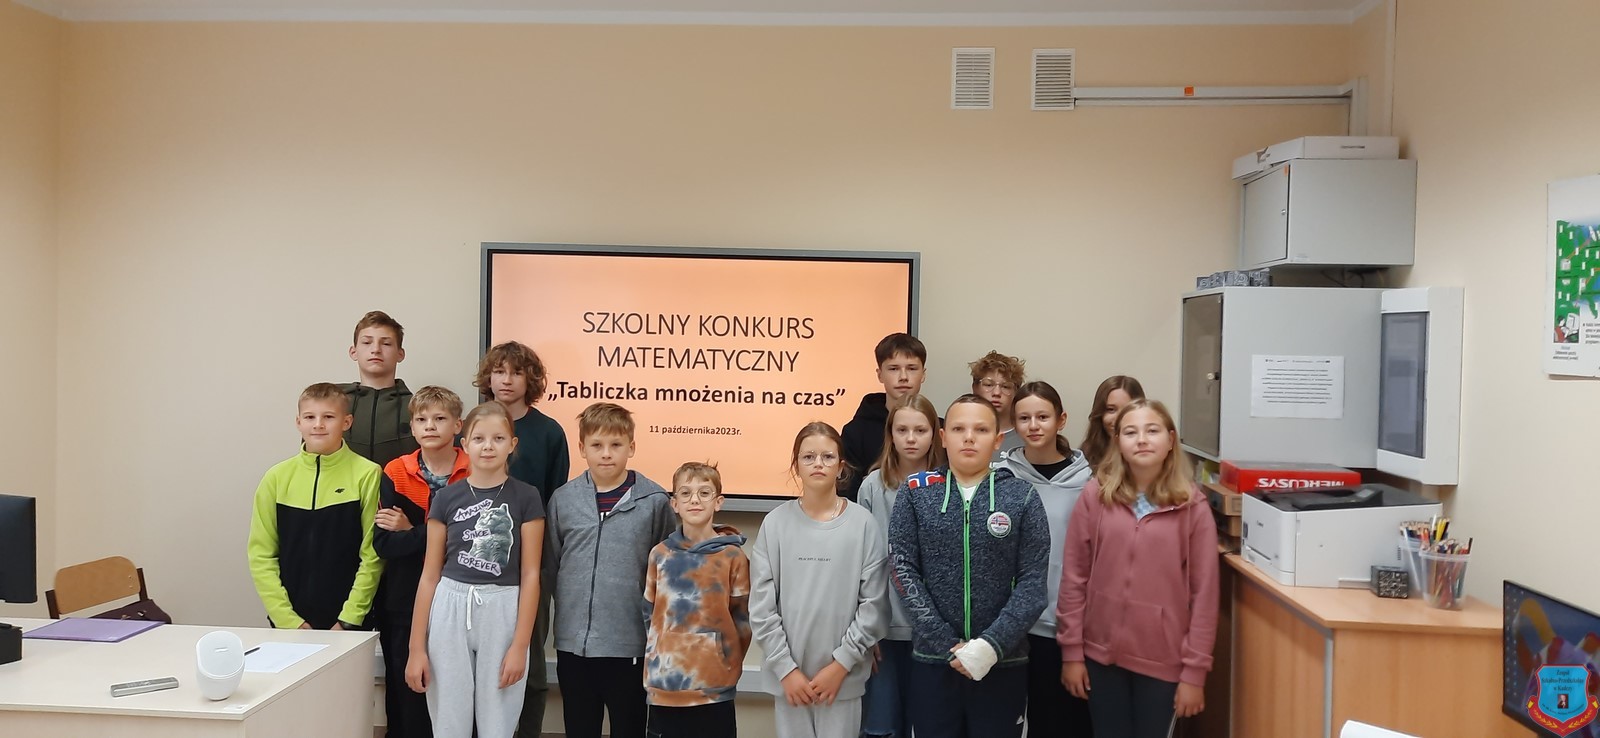 Szkolny Konkurs Matematyczny -grupa uczestników konkursu